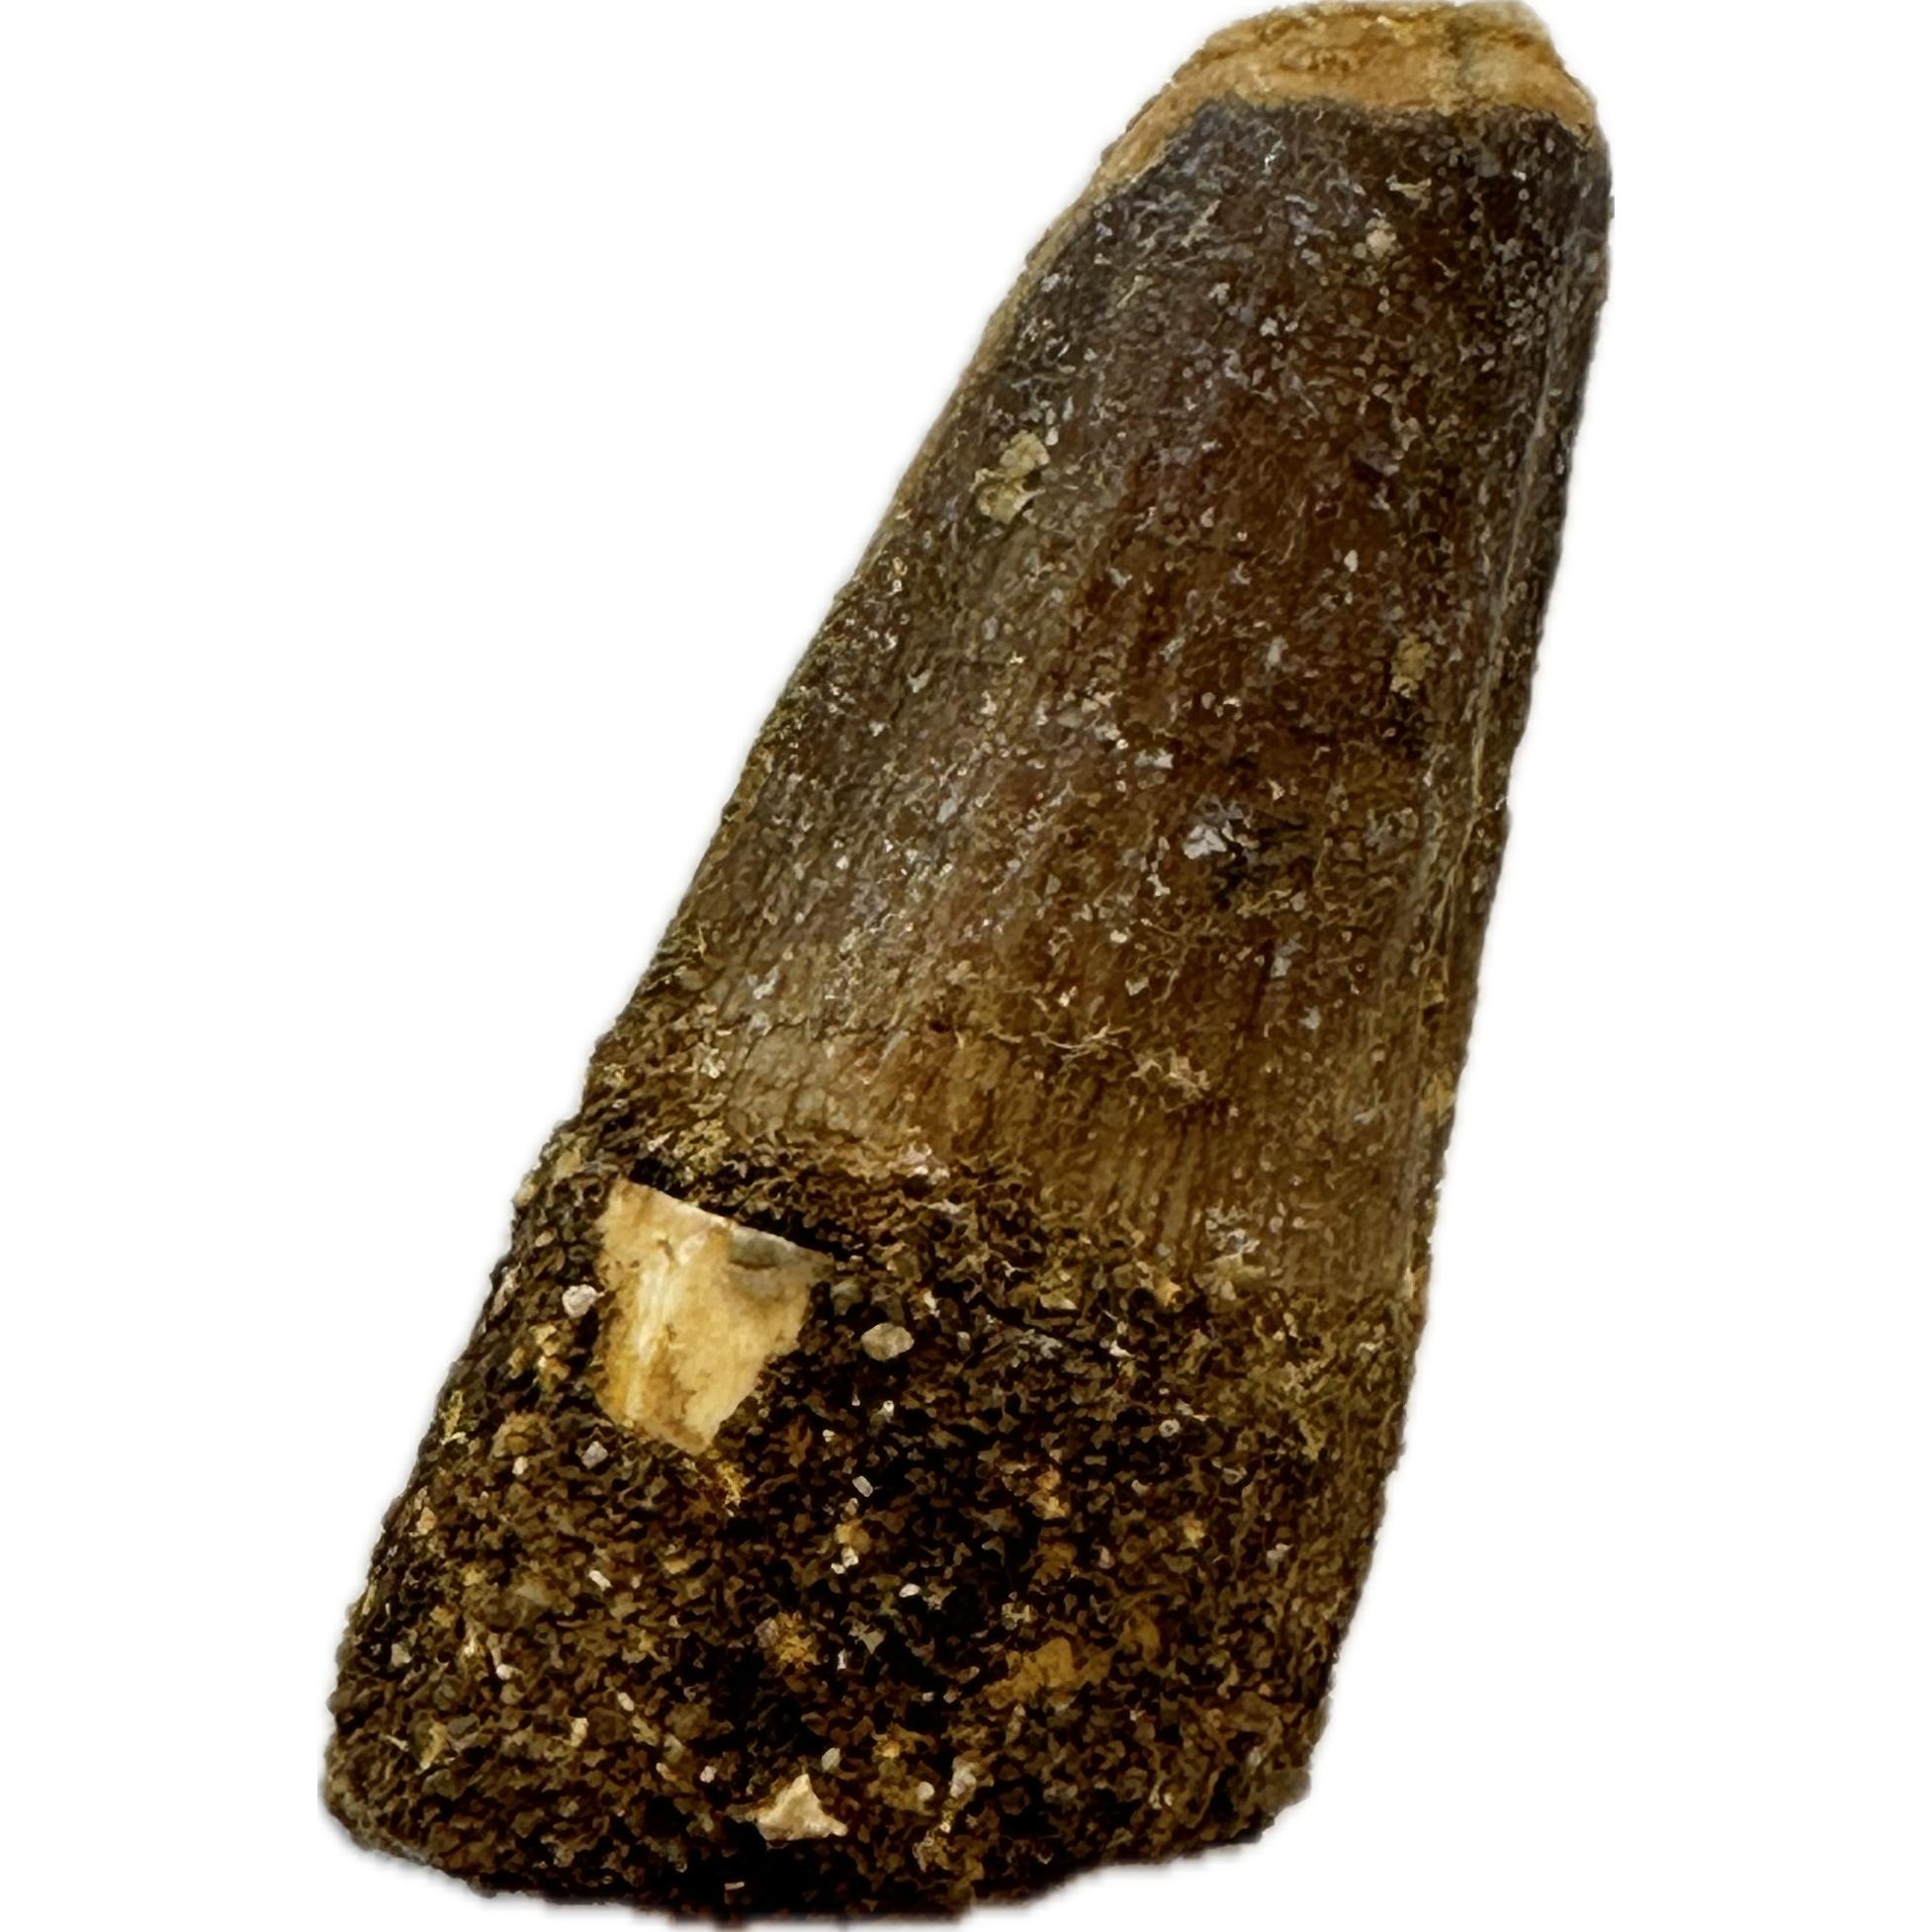 Spinosaurus dinosaur Tooth, 1 5/8″ Prehistoric Online